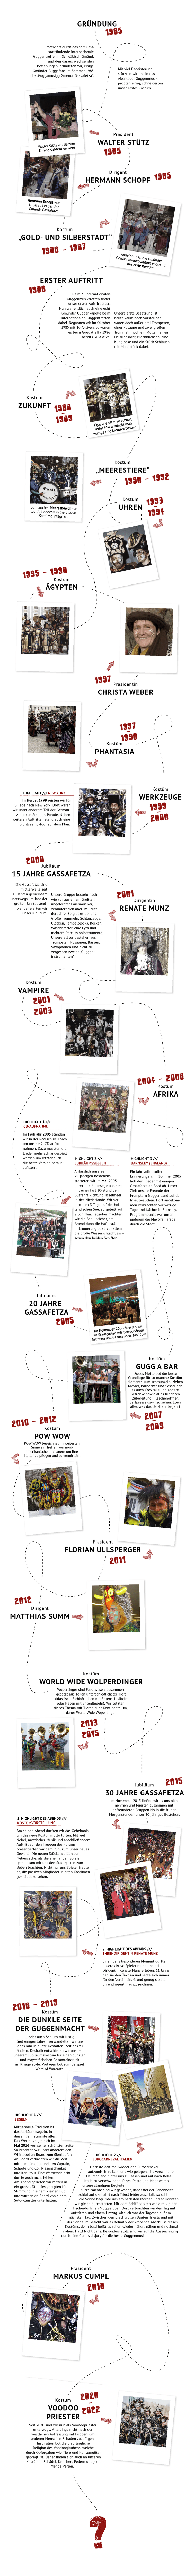 Die Geschichte der Gassafetza